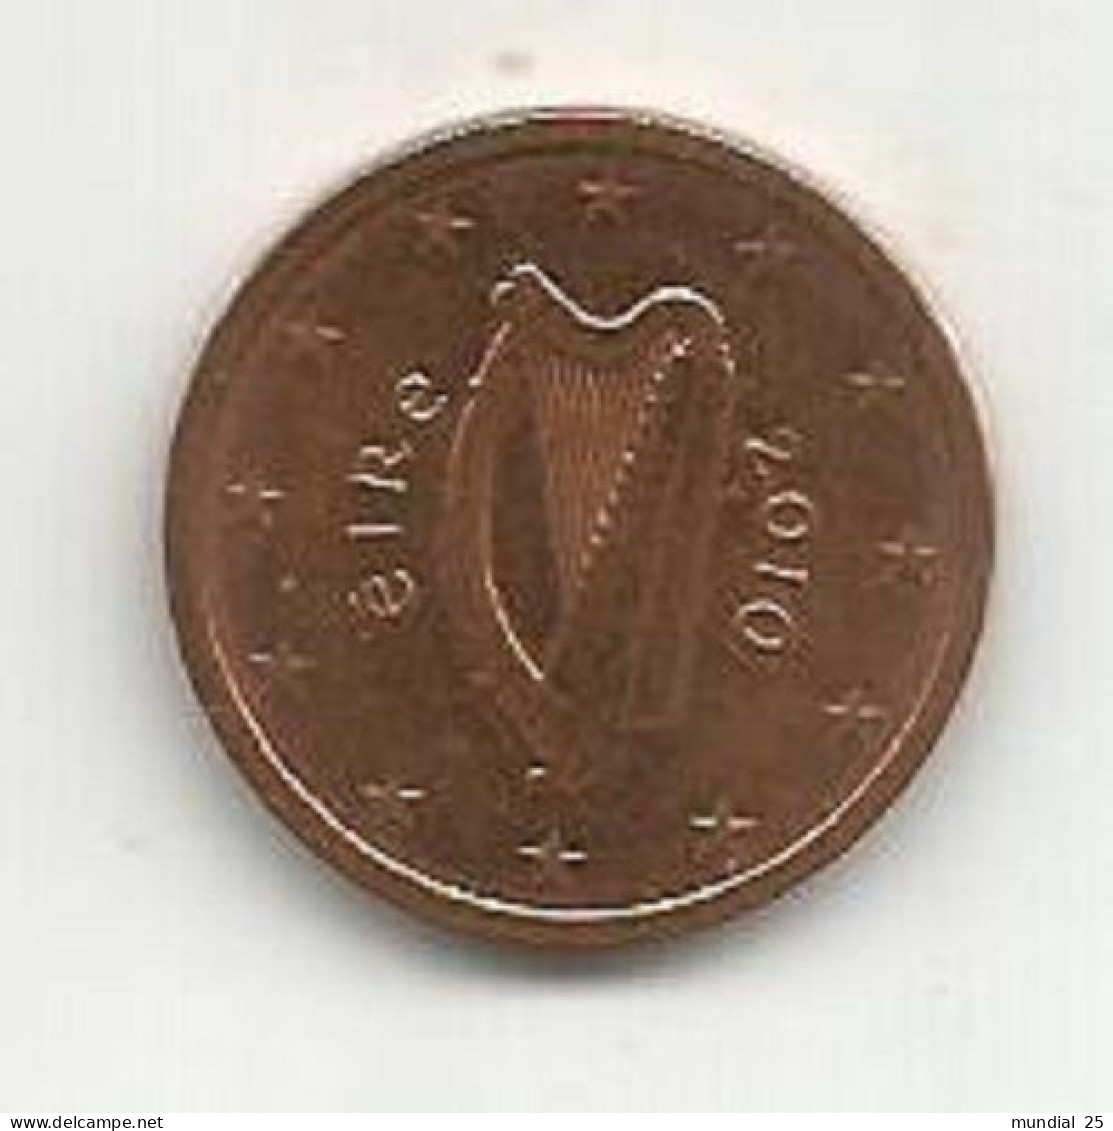 IRELAND 2 EURO CENT 2010 - Irlanda